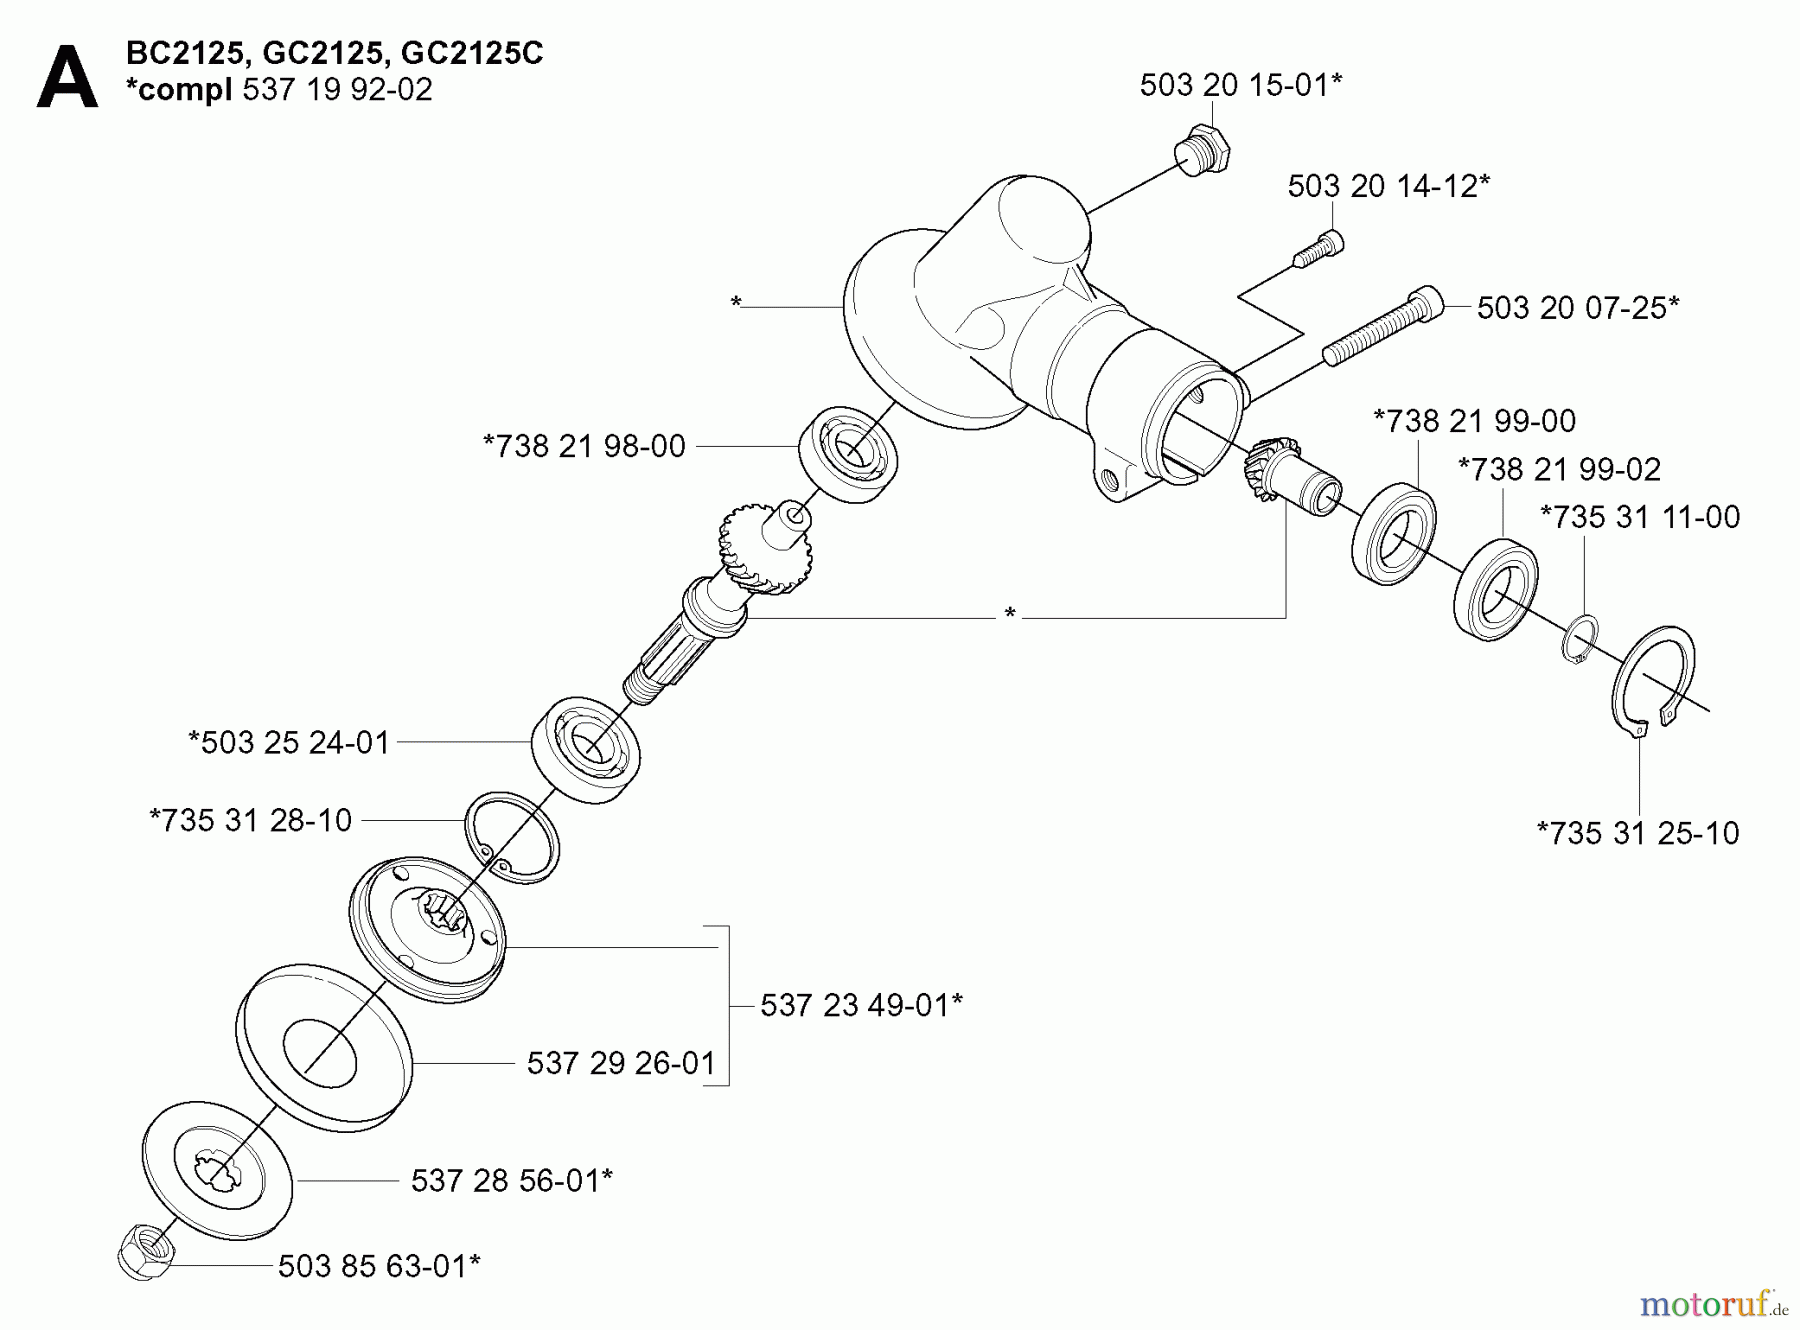  Jonsered Motorsensen, Trimmer GT2125 - Jonsered String/Brush Trimmer (2005-01) BEVEL GEAR